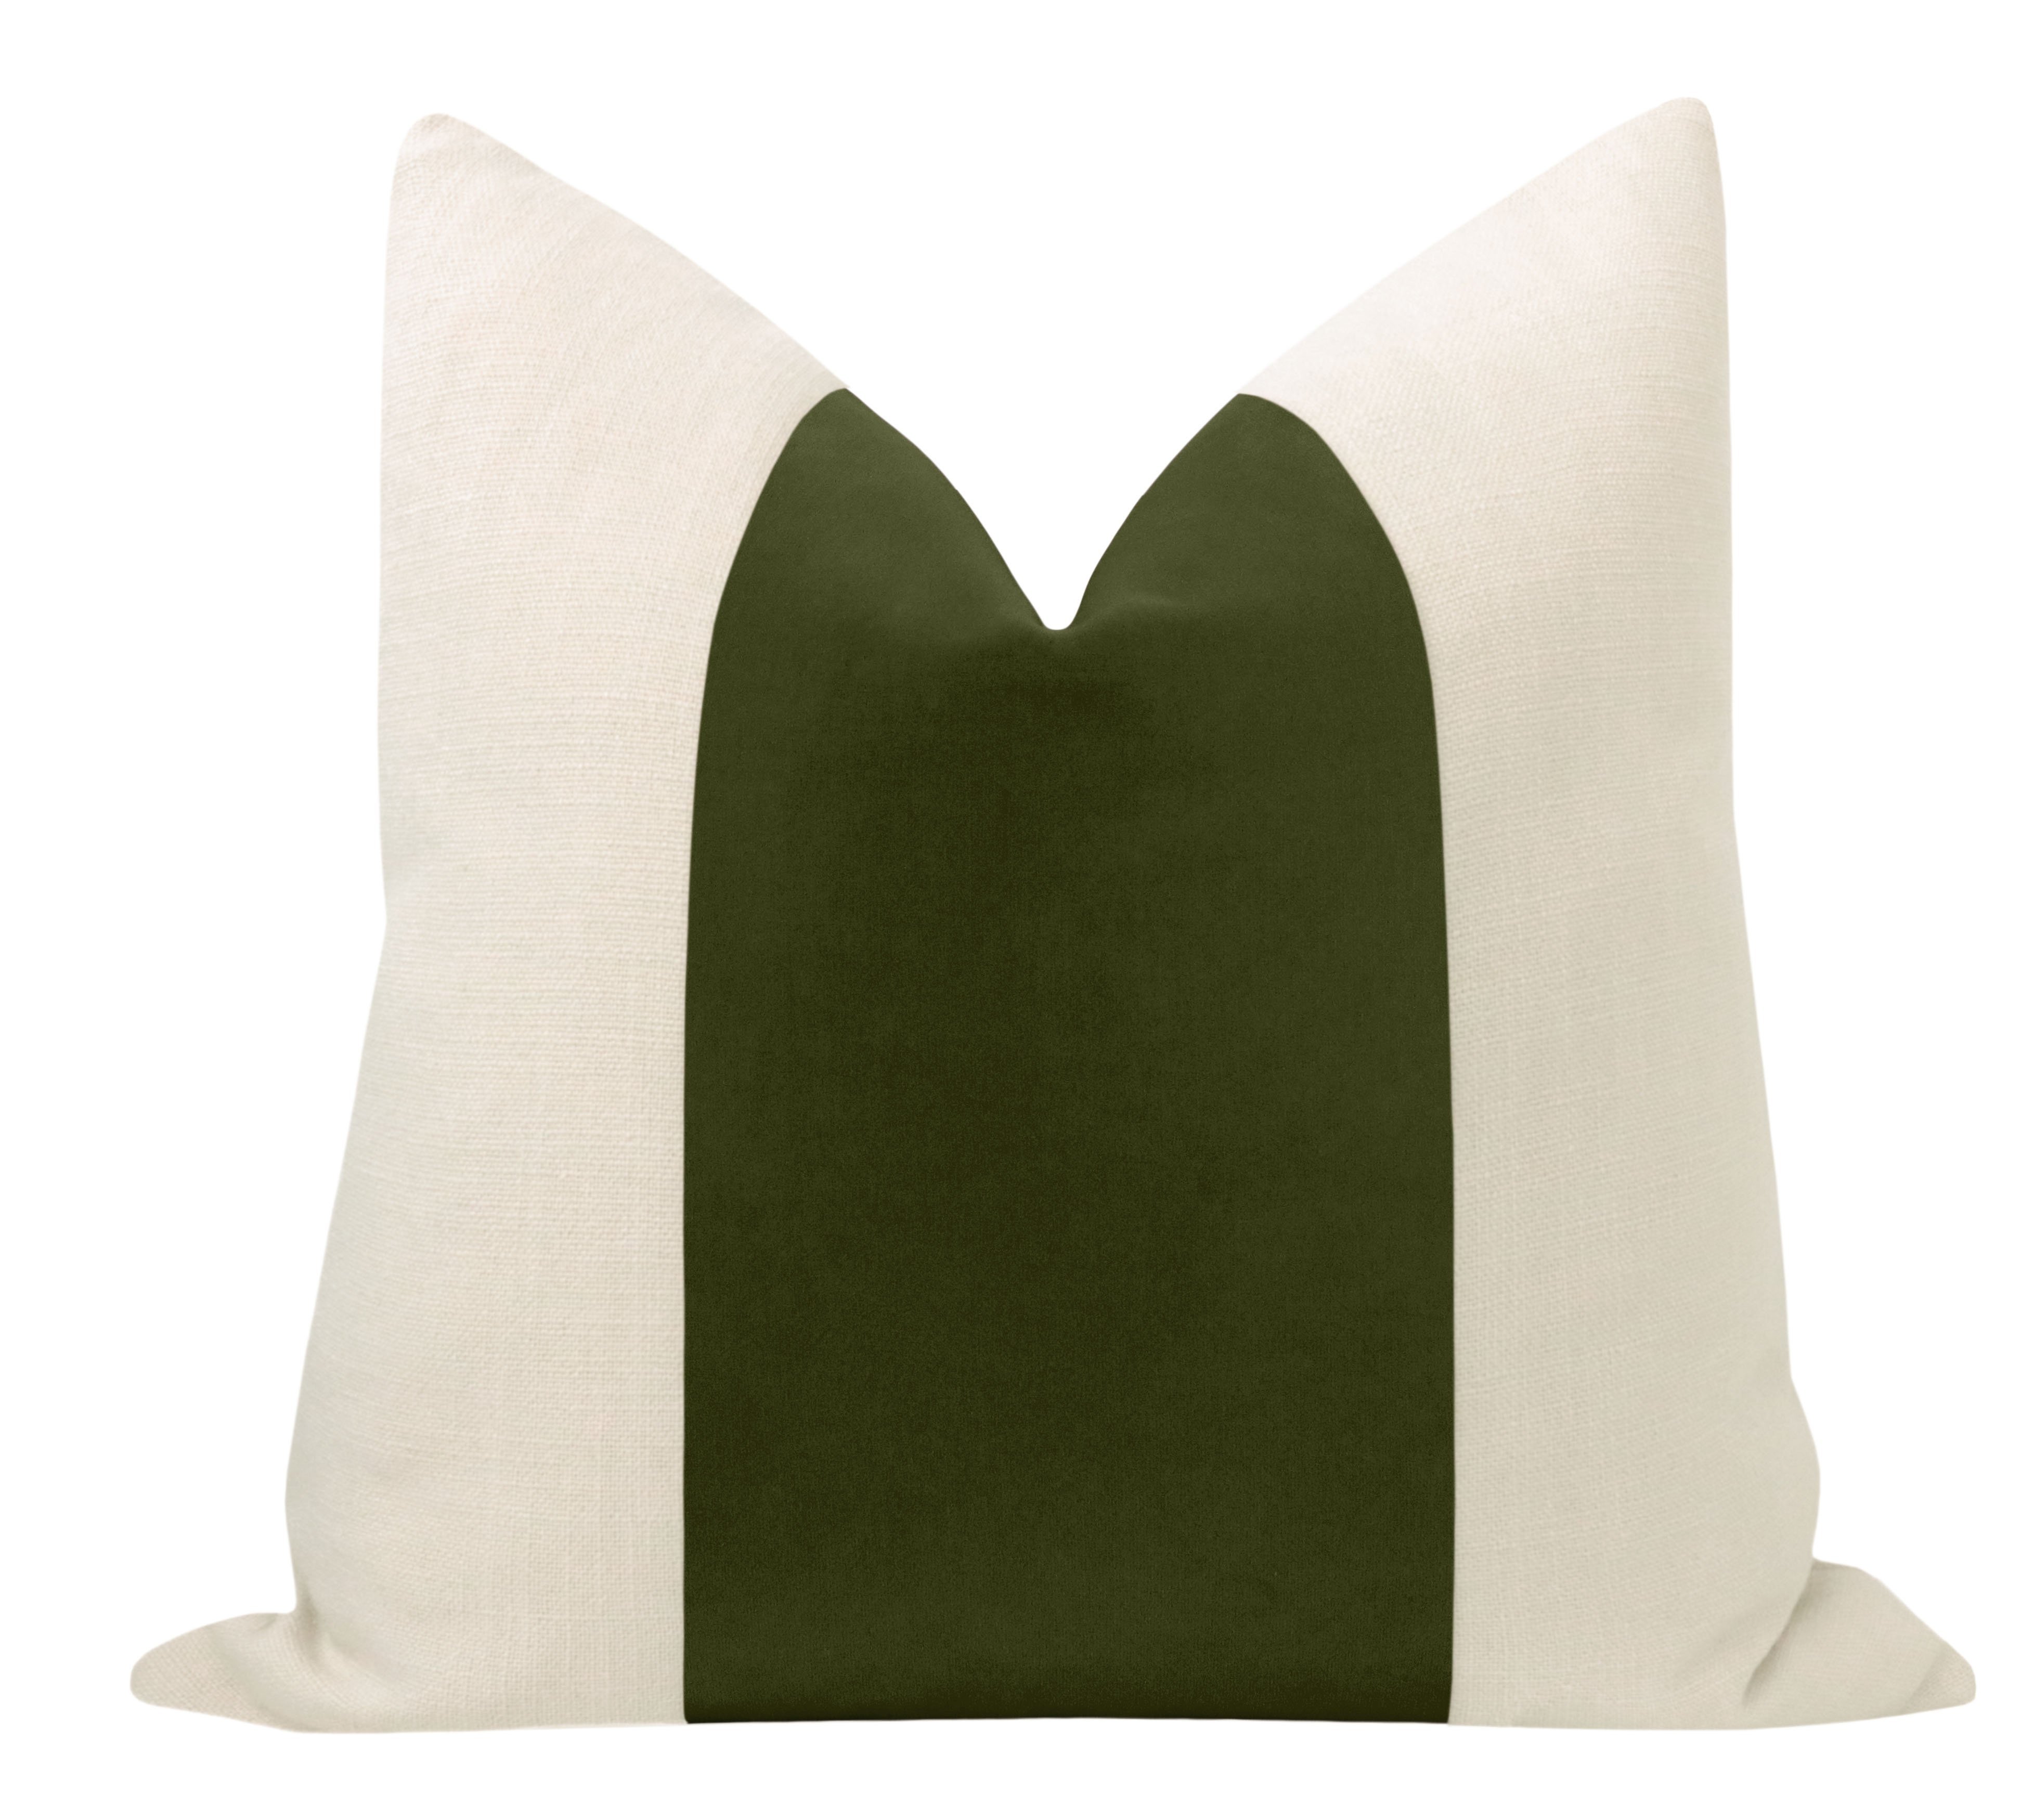 Panel Studio Velvet Pillow Cover, Olive, 20" x 20" - Image 0